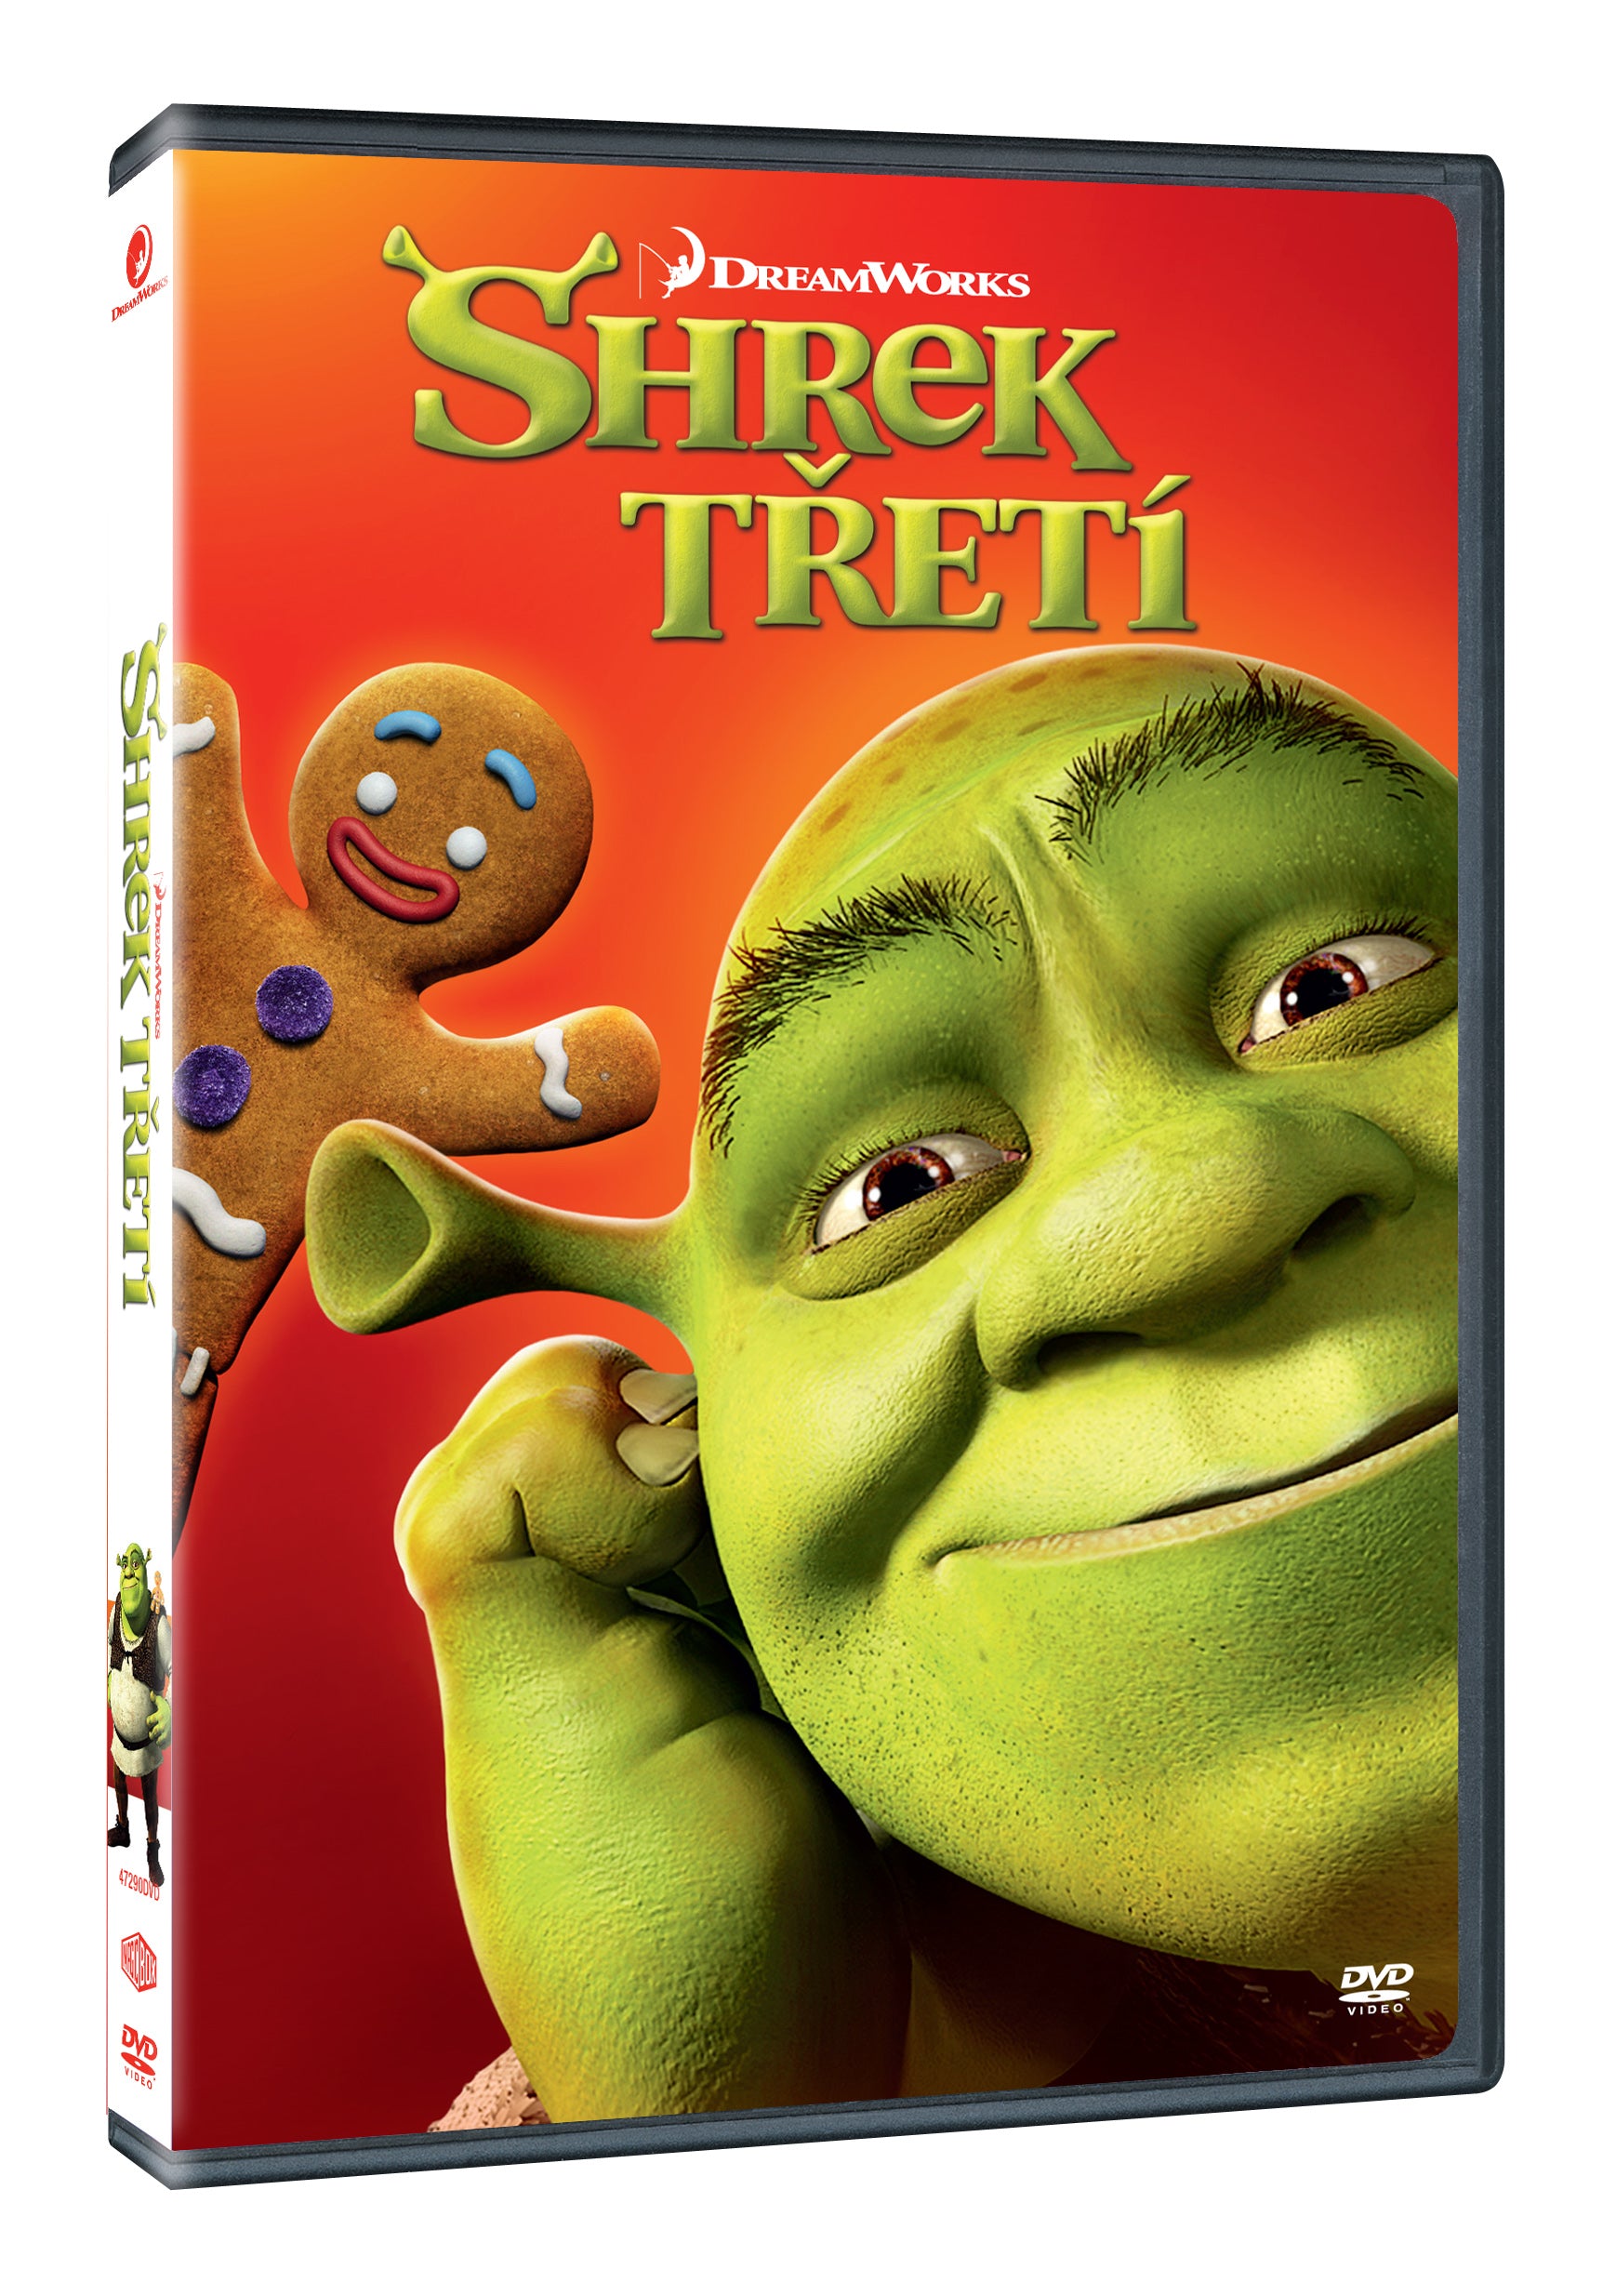 Shrek Treti DVD / Shrek the Third